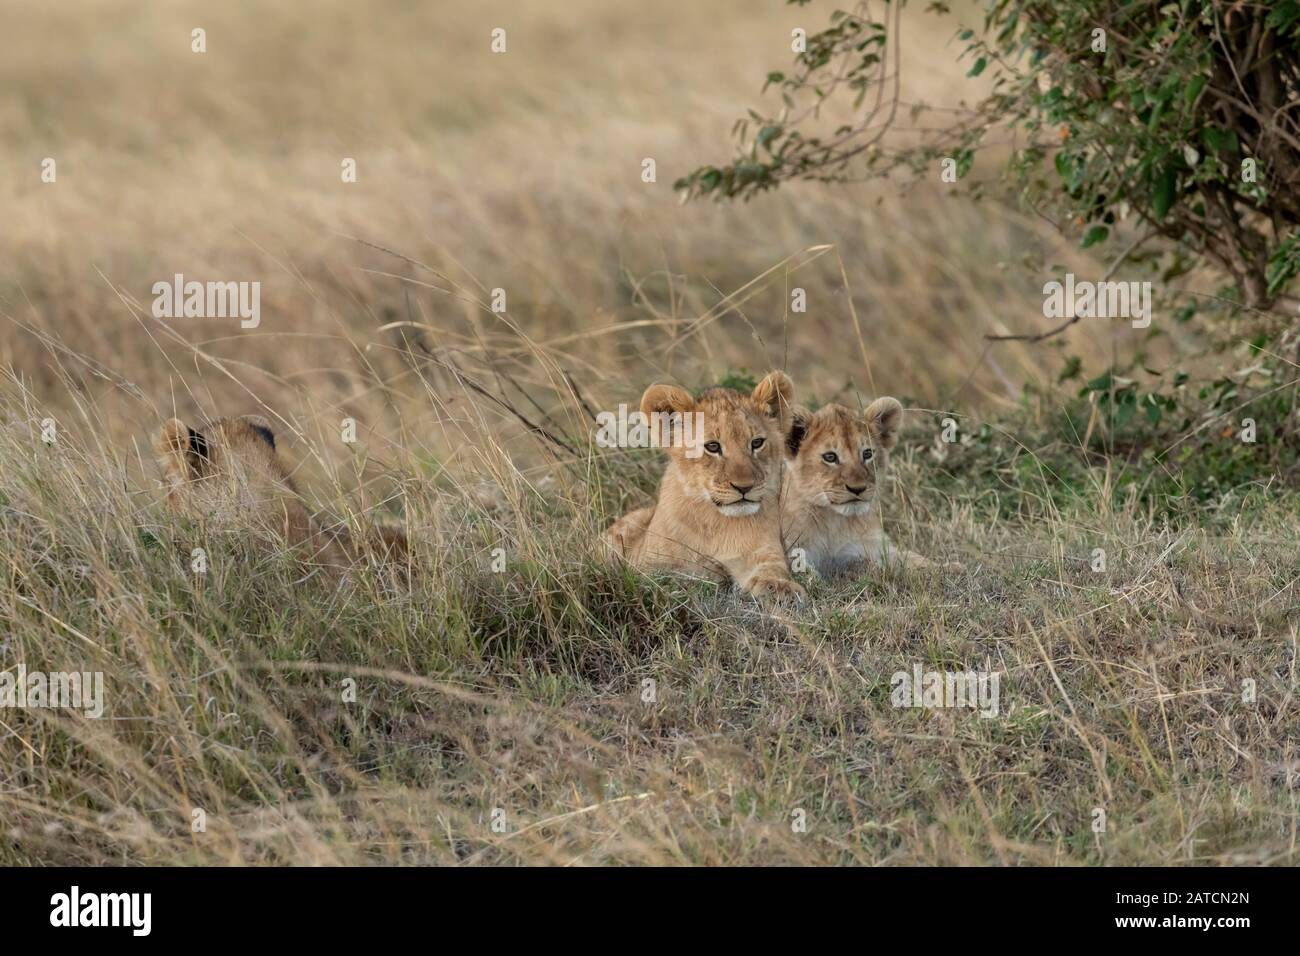 Lion africain (Panthera leo) sur la savane à Mara North Conservancy, Kenya Banque D'Images